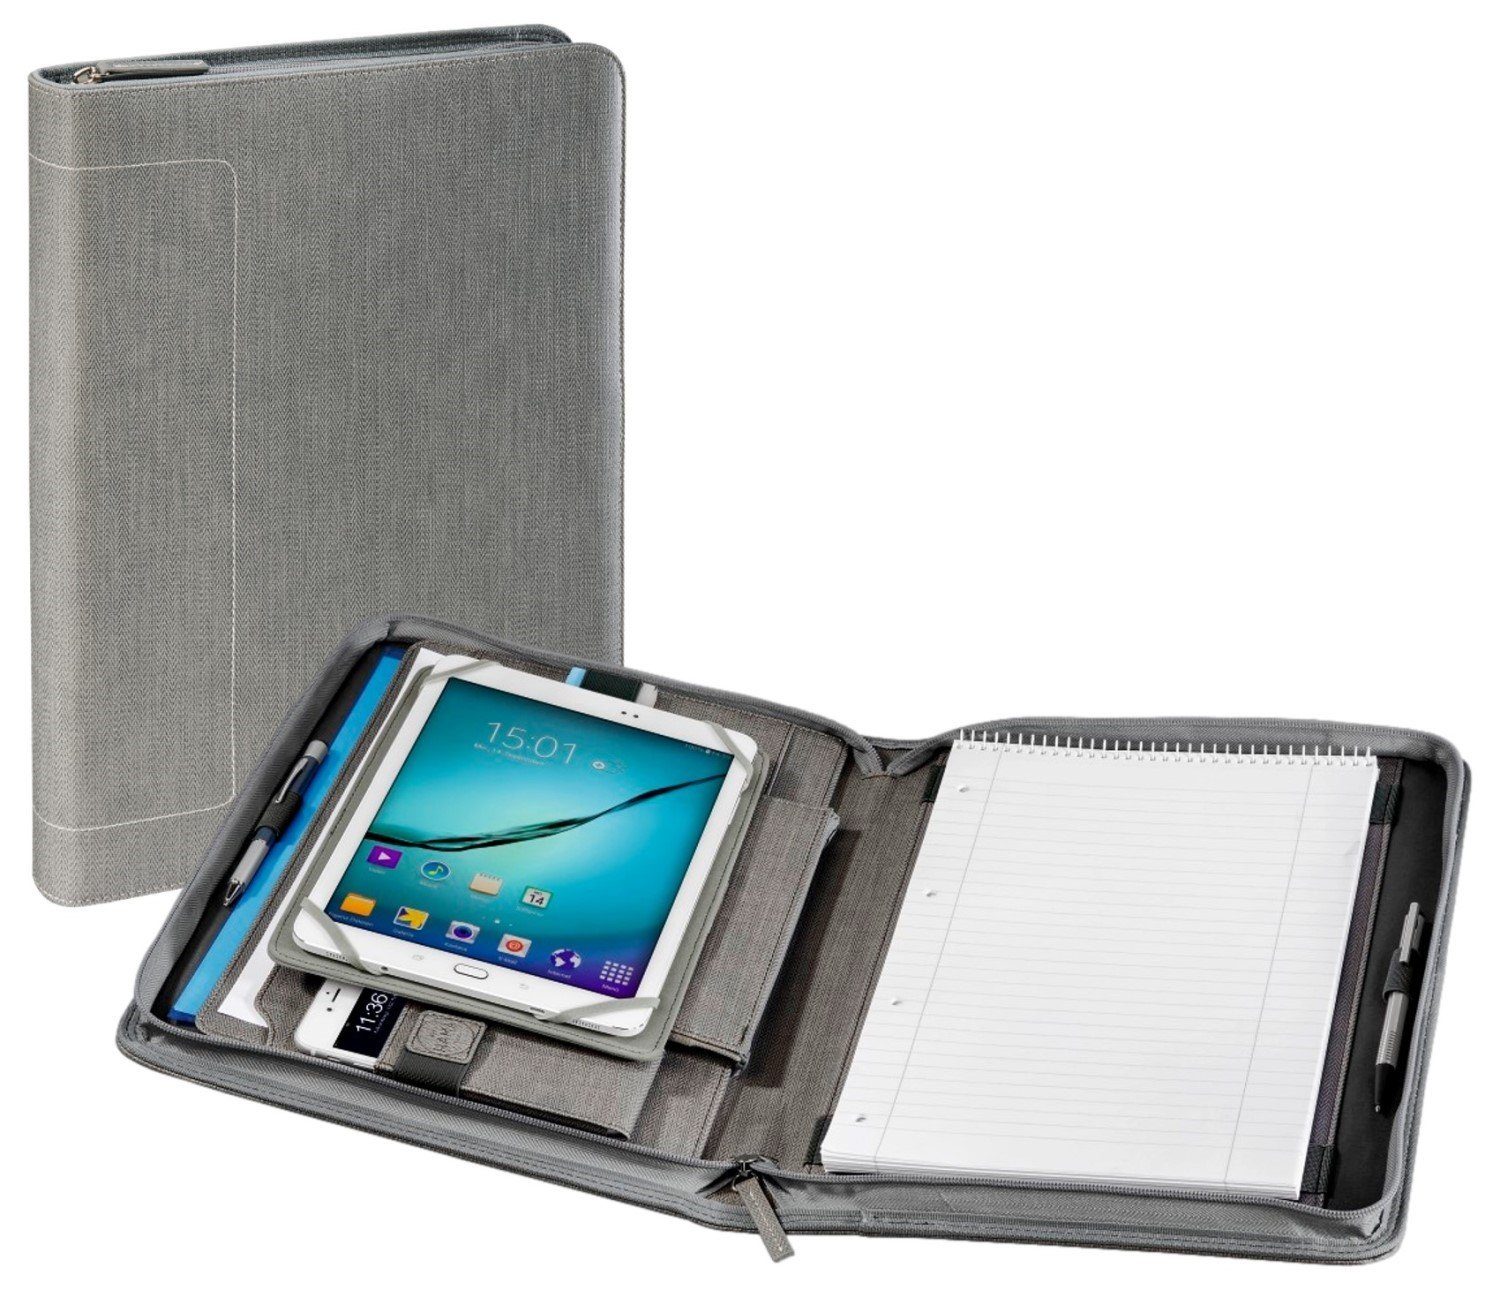 Hama Tablet-Hülle 3in1 Tablet-Organizer A4 Tasche Hülle, Business Case für  9,7"-10,2" Tablet, A4-Dokumentenfach, Zubehörfächern, Dokumentenfach mit 2  Einschubfächern für DIN A4